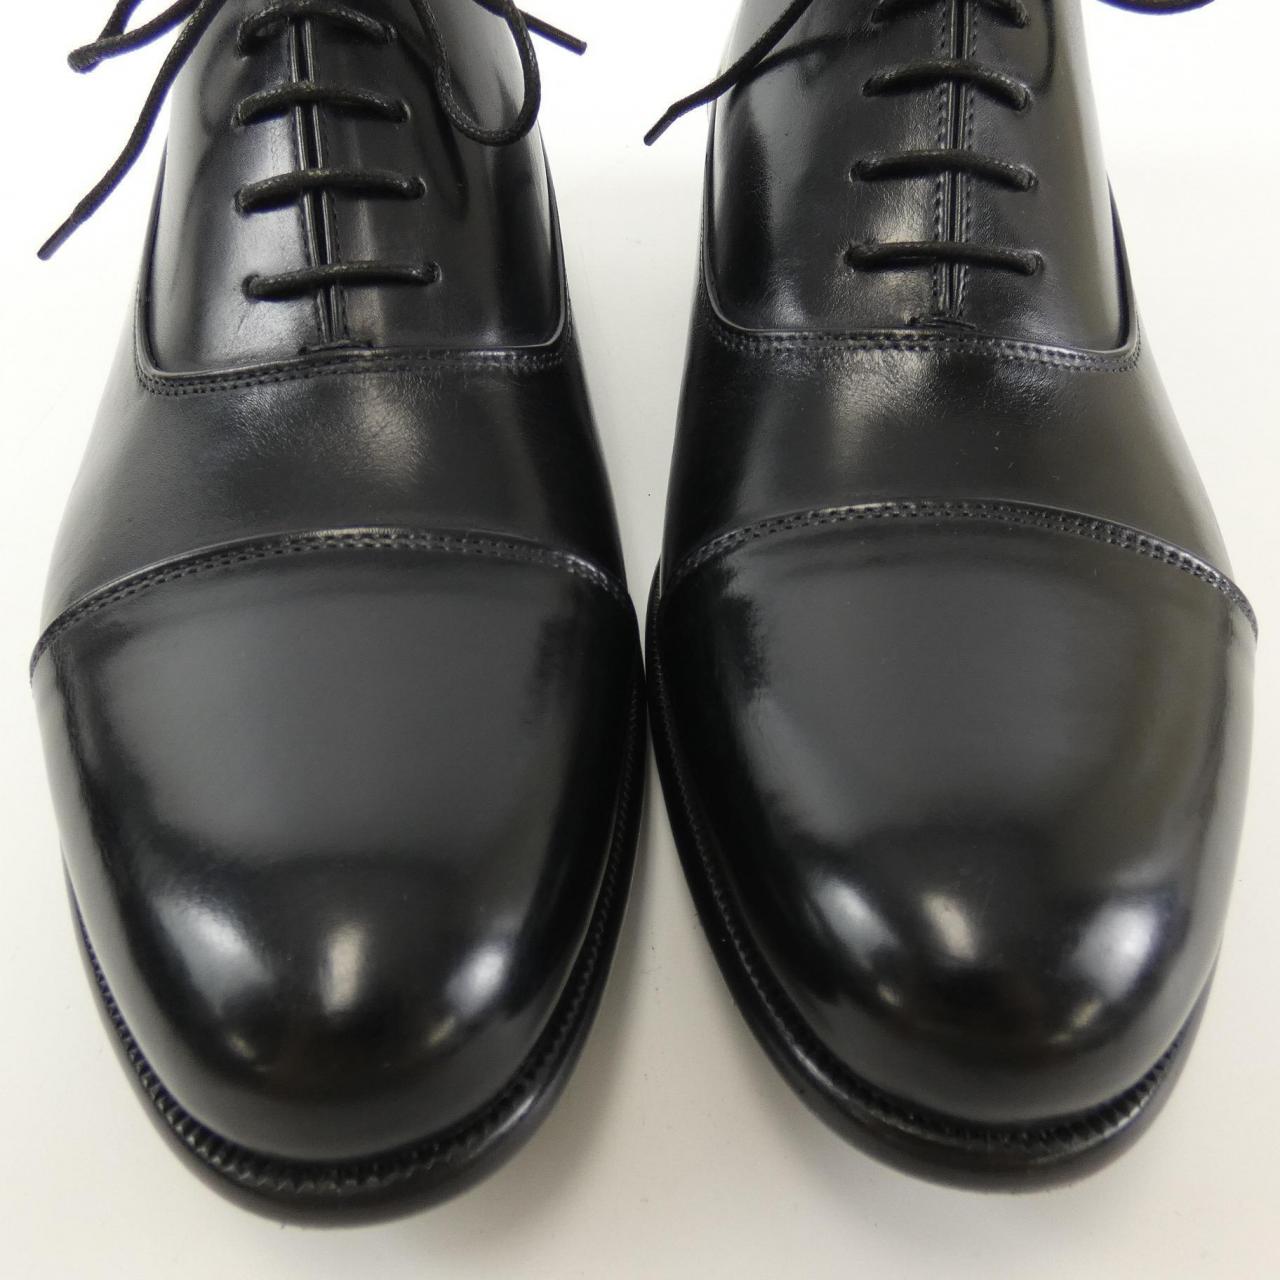 KOMEHYO |PAUL EVANS Dress Shoes|PAUL EVANS|Men's Fashion|Shoes ...